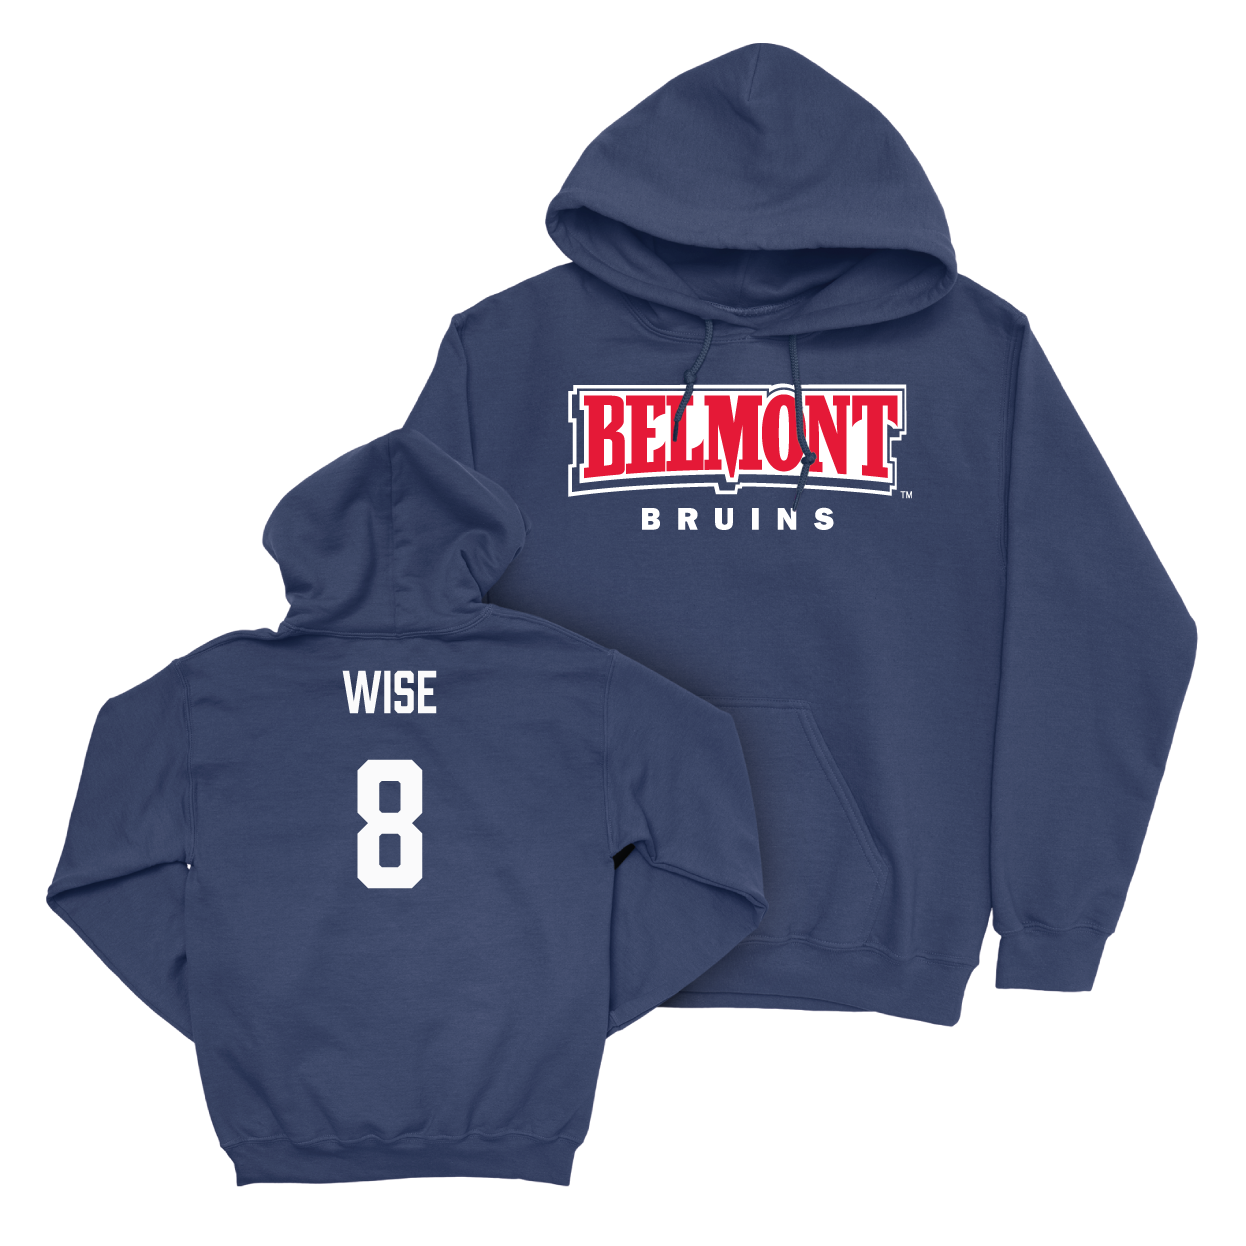 Belmont Women's Soccer Navy Belmont Hoodie - Kennedy Wise Small